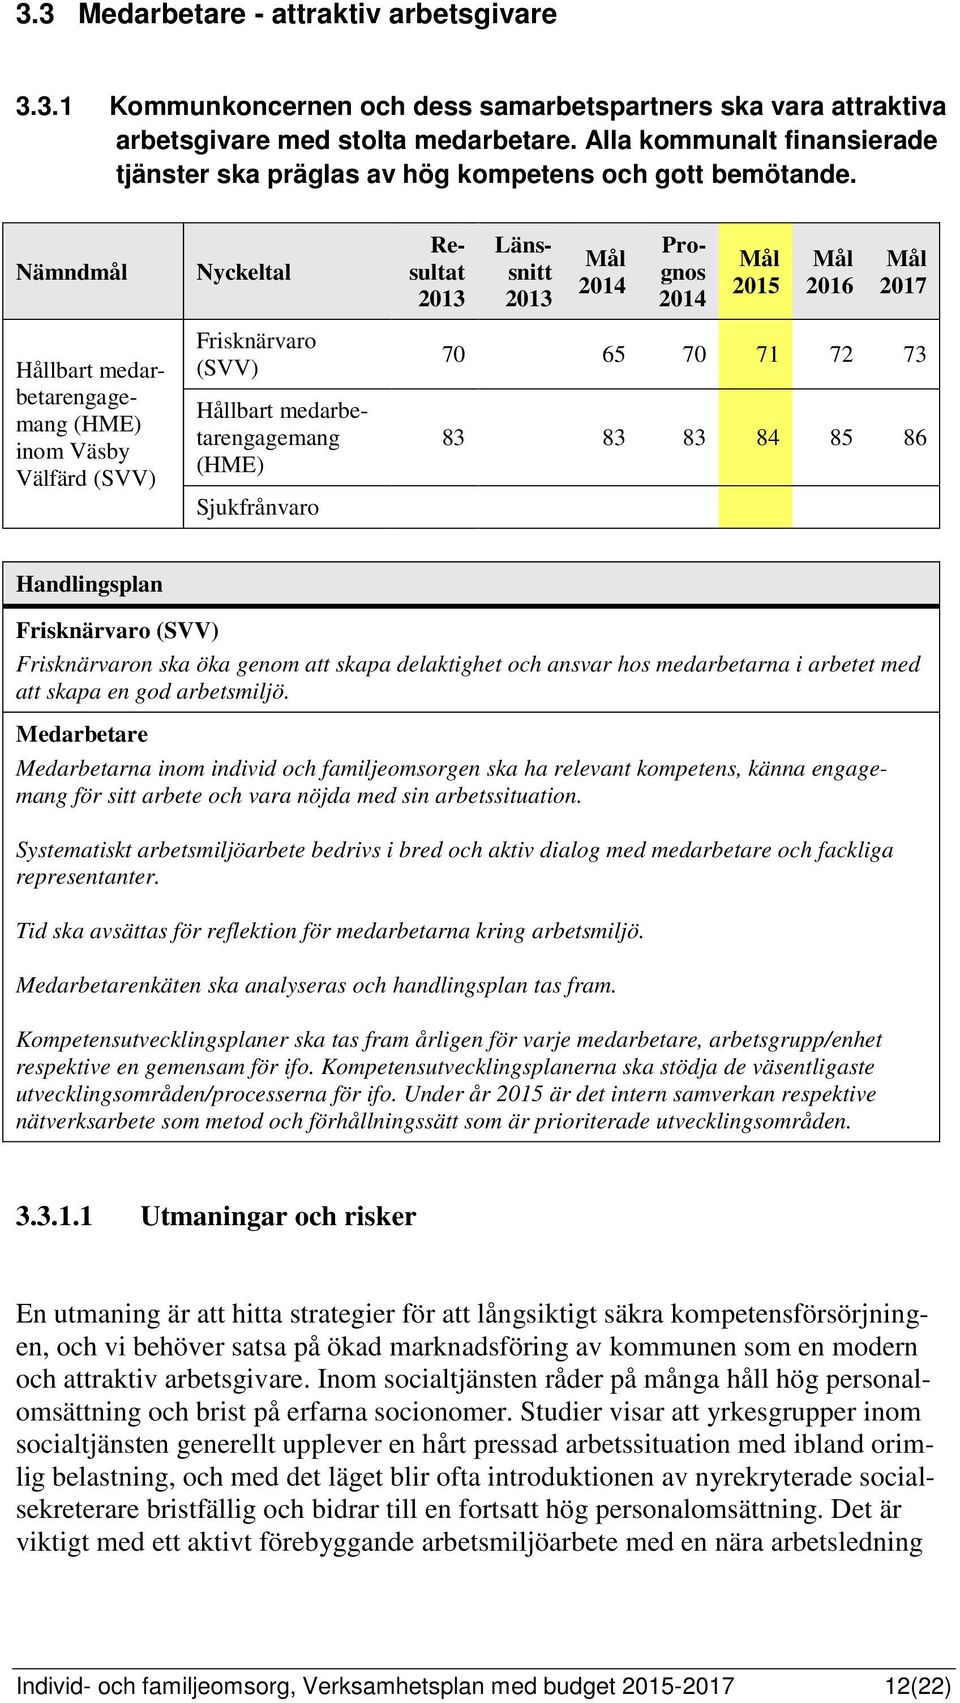 Nämndmål Hållbart medarbetarengagemang (HME) inom Väsby Välfärd (SVV) Nyckeltal Frisknärvaro (SVV) Hållbart medarbetarengagemang (HME) Sjukfrånvaro Resultat Länssnitt Prognos 2015 2016 2017 70 65 70